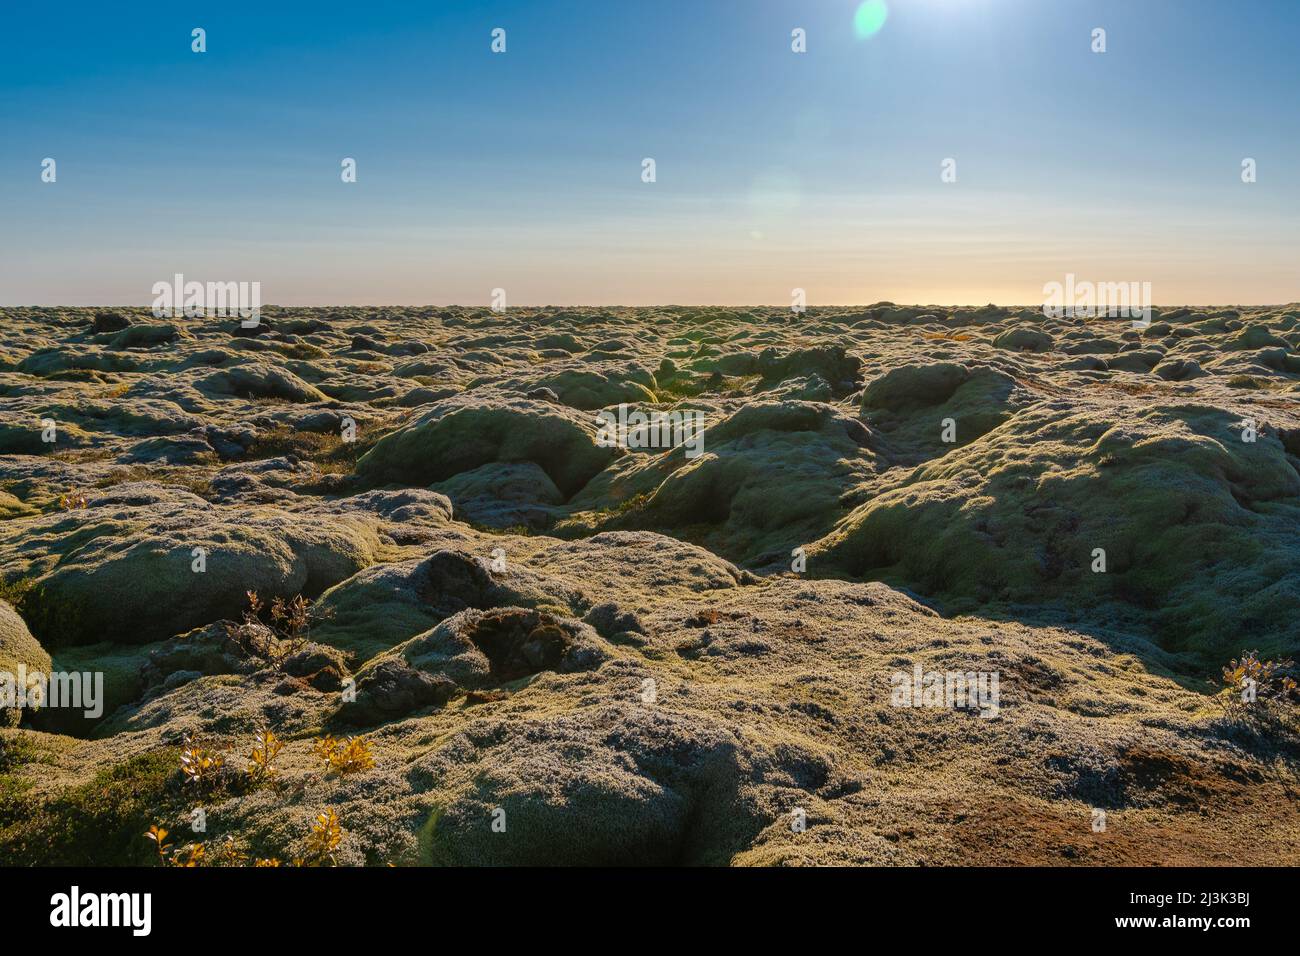 Laut den isländischen Legenden leben die verborgenen Menschen in diesen Steinen, den Elfen, Trollen und Feen Foto Stock